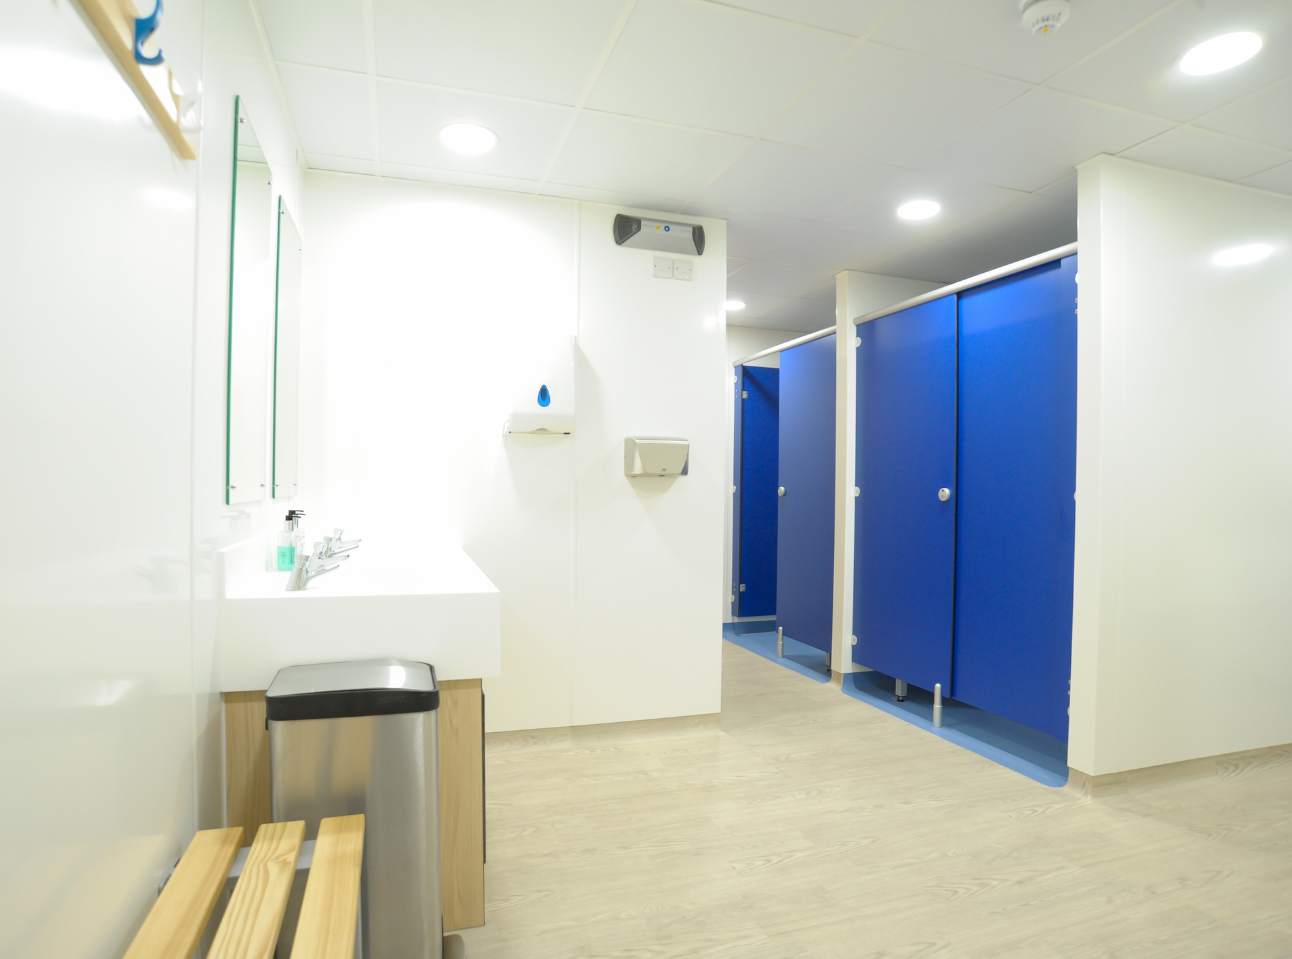 Royal Motor Yacht Club Washroom Refurbishment | Case Study | Commercial Washrooms